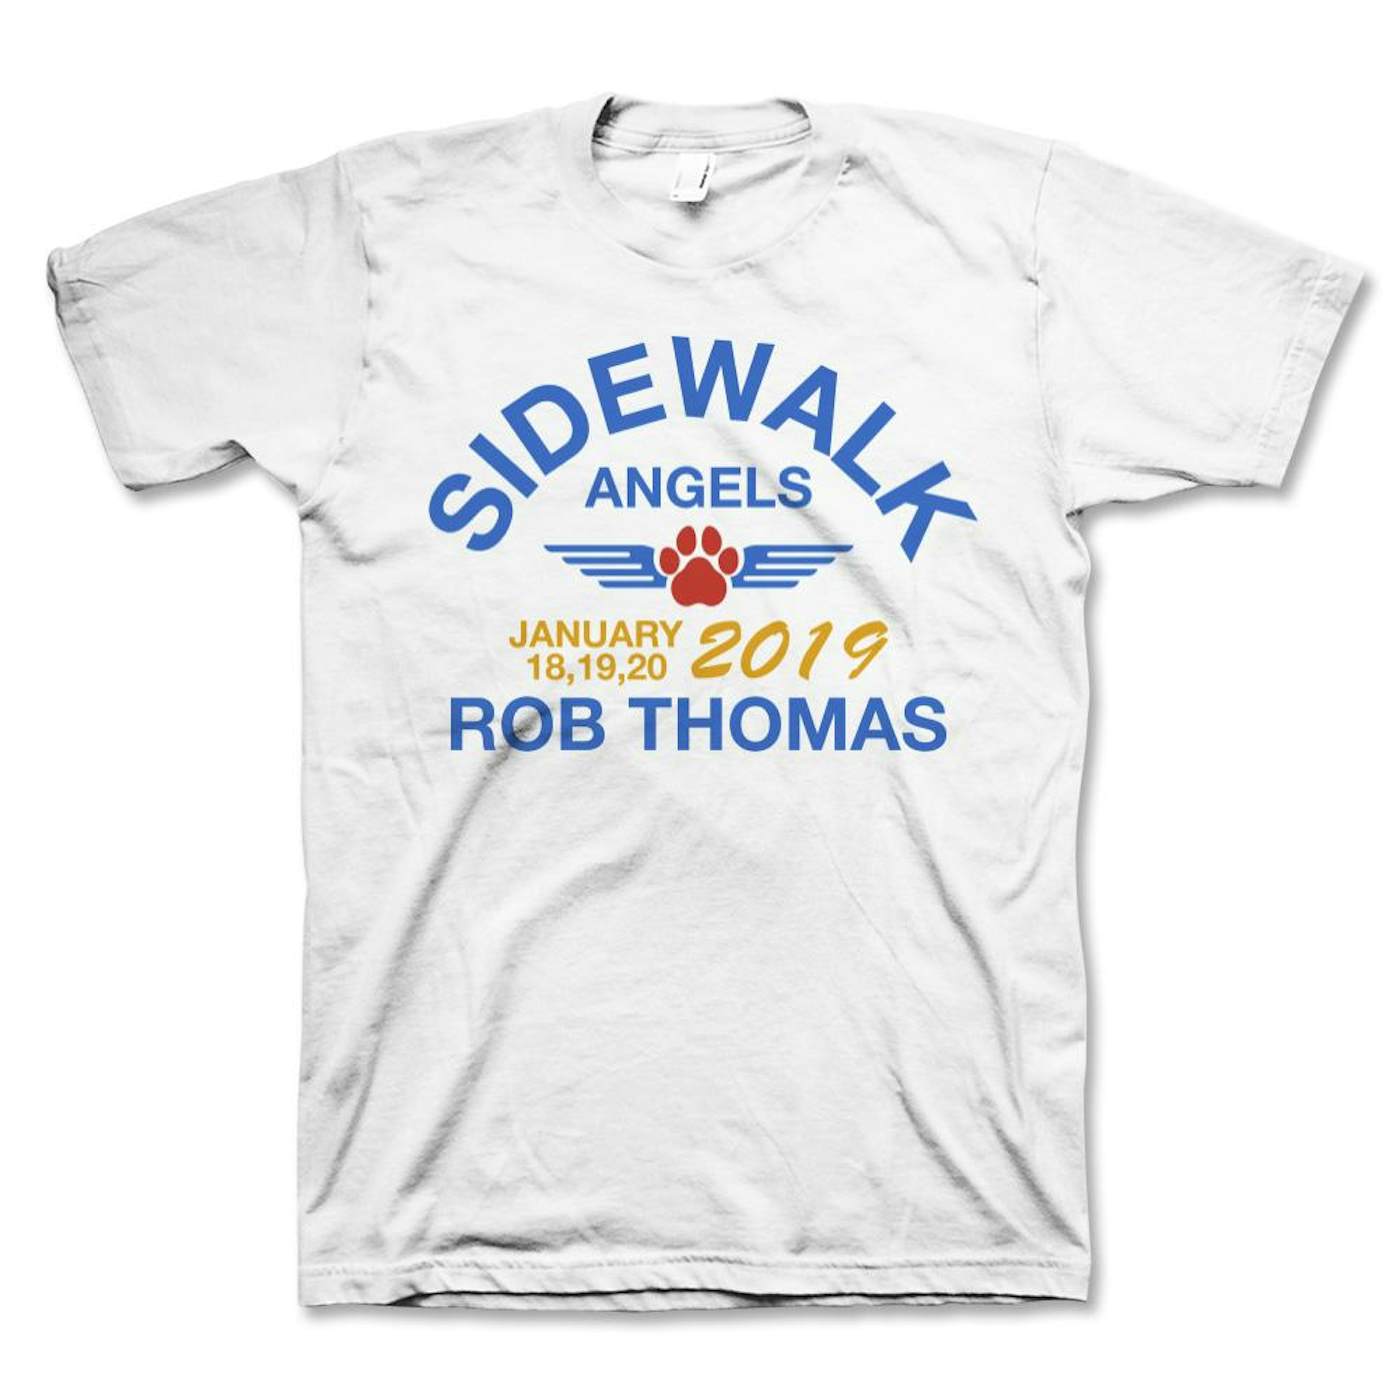 Rob Thomas Arch T-Shirt